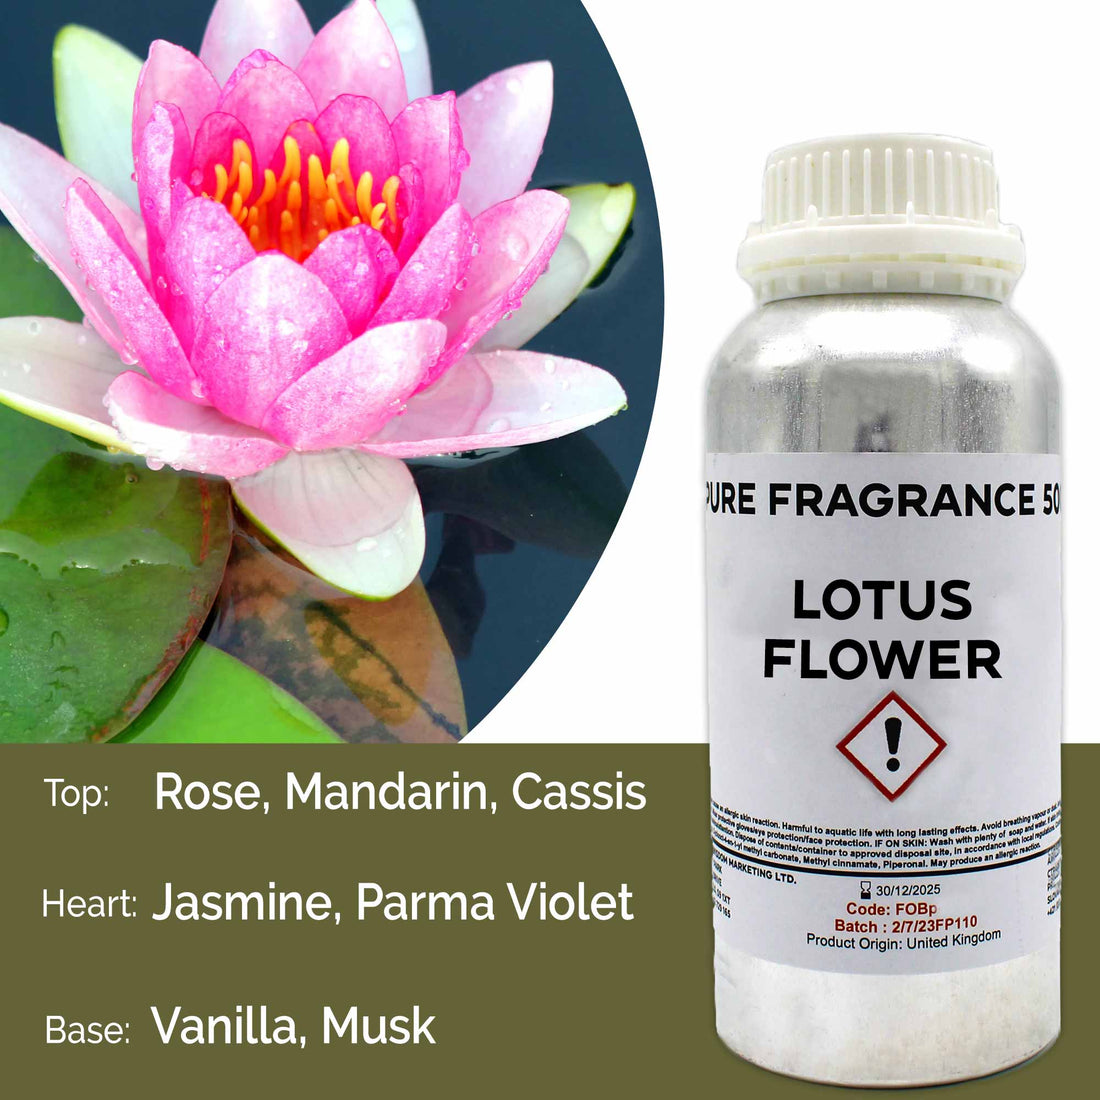 Lotus Flower Pure Fragrance Oil - 500ml